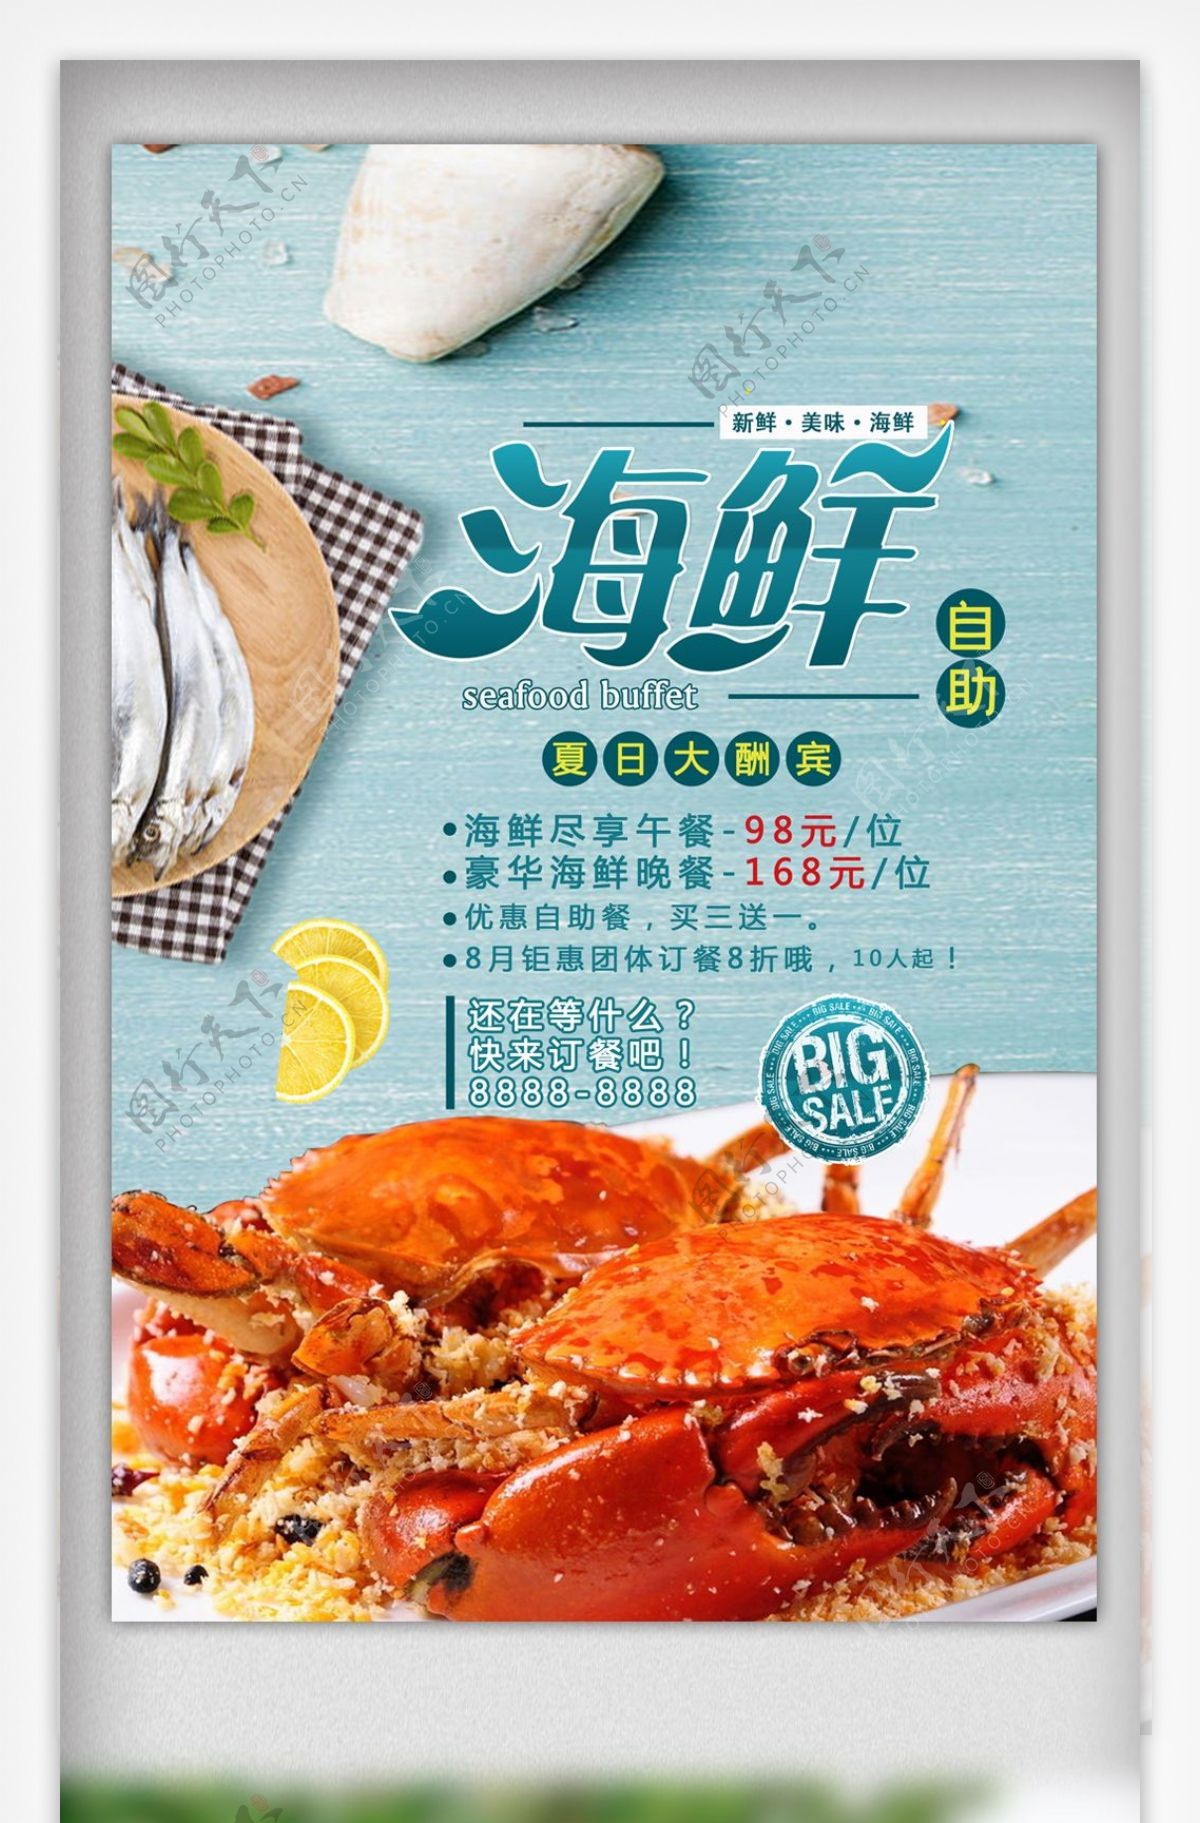 美食海鲜自助海报设计